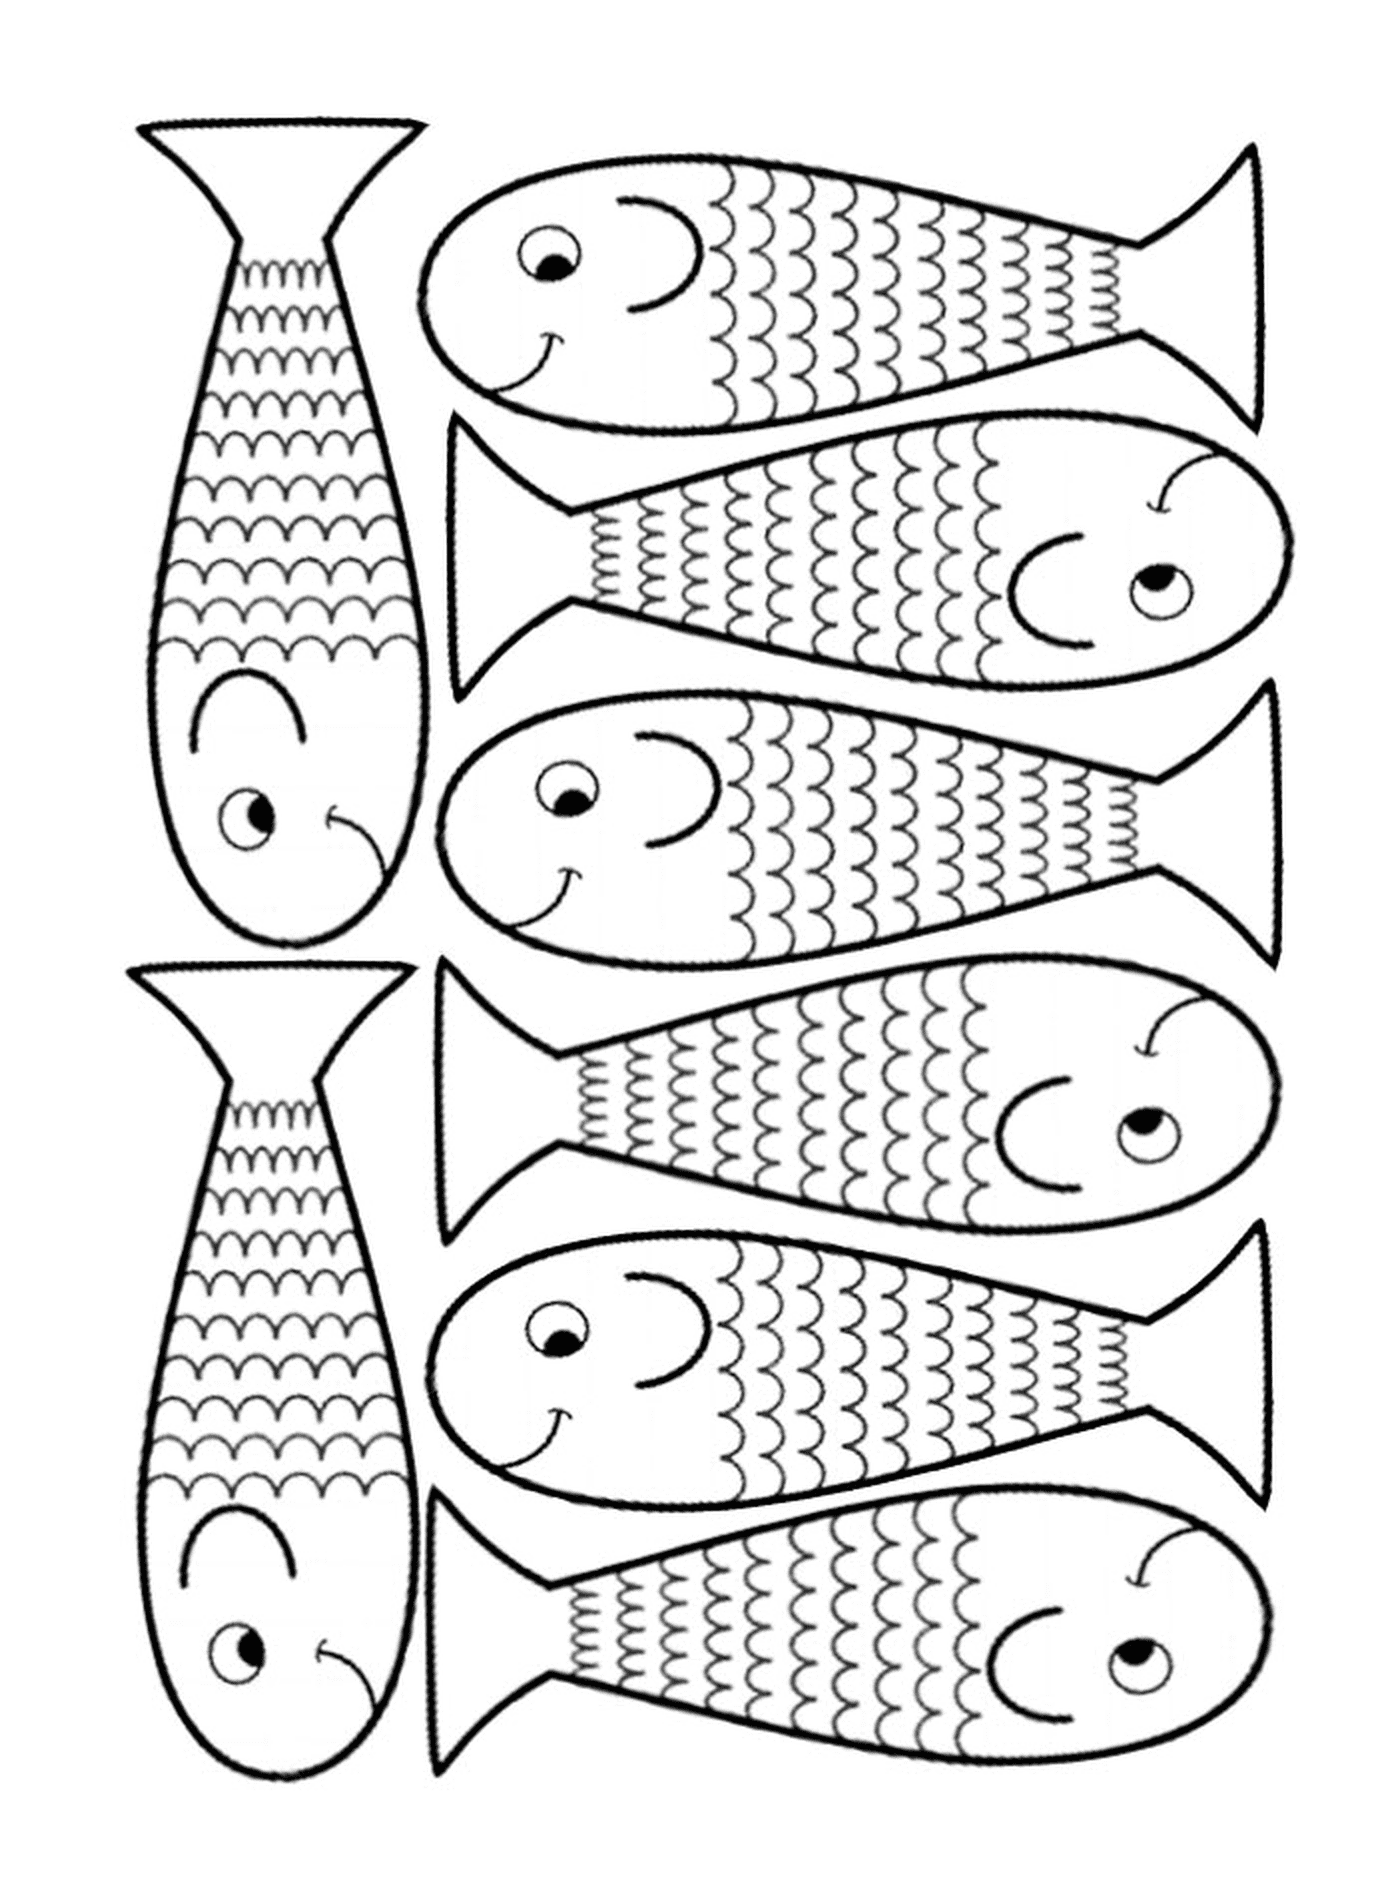  Posibilidad de dibujar varios peces 